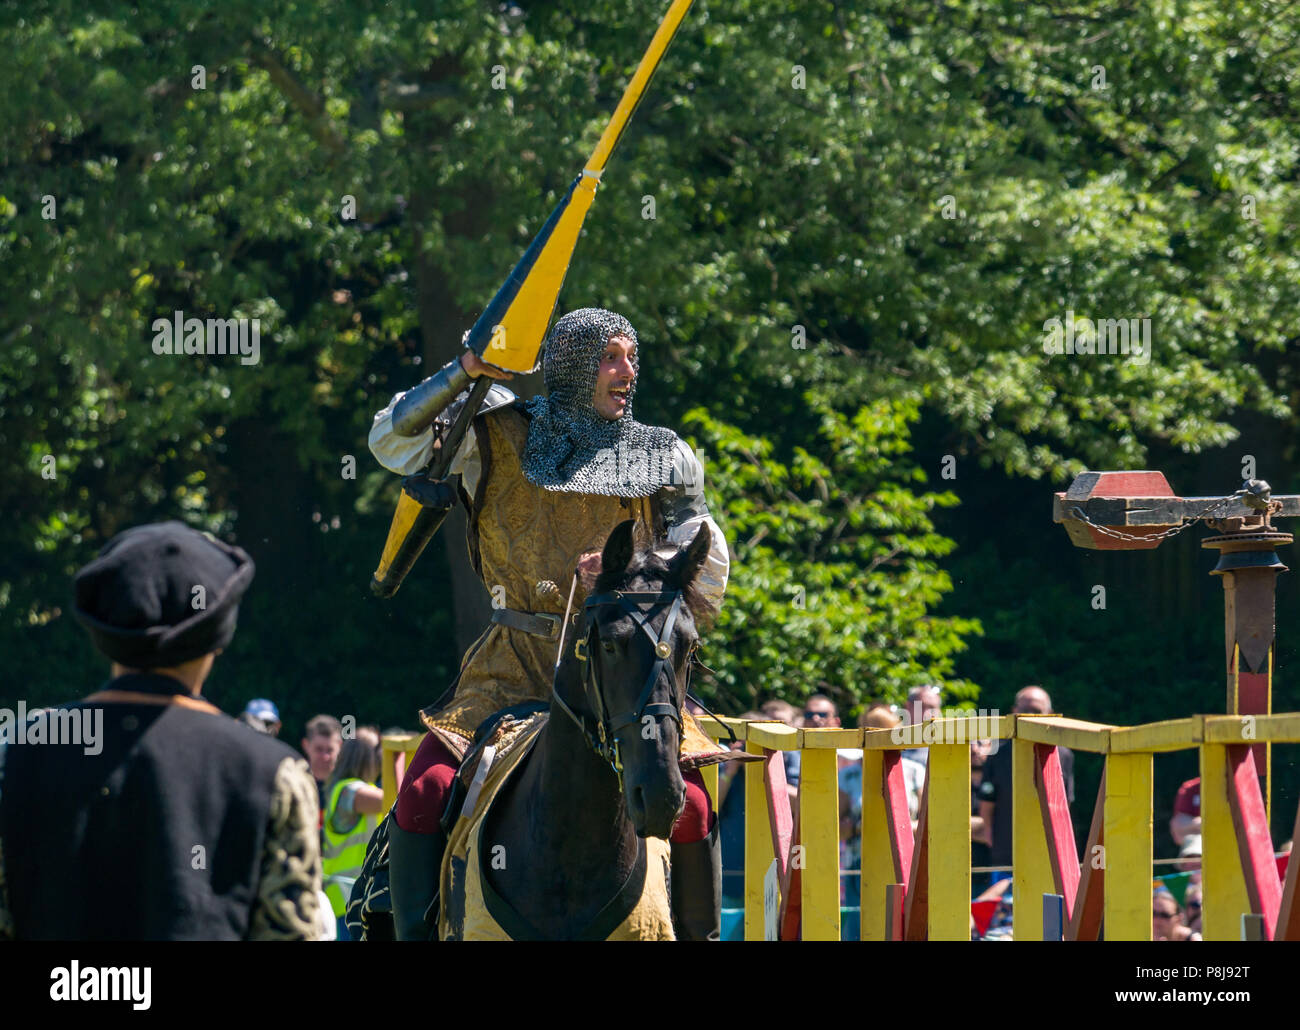 Medieval Jousting, Linlithgow Palace, Schottland, Großbritannien. Sommer Unterhaltung von Les Amis D'Onno equine stunt Team. Ritter auf Pferd hits Target mit Lanze Stockfoto